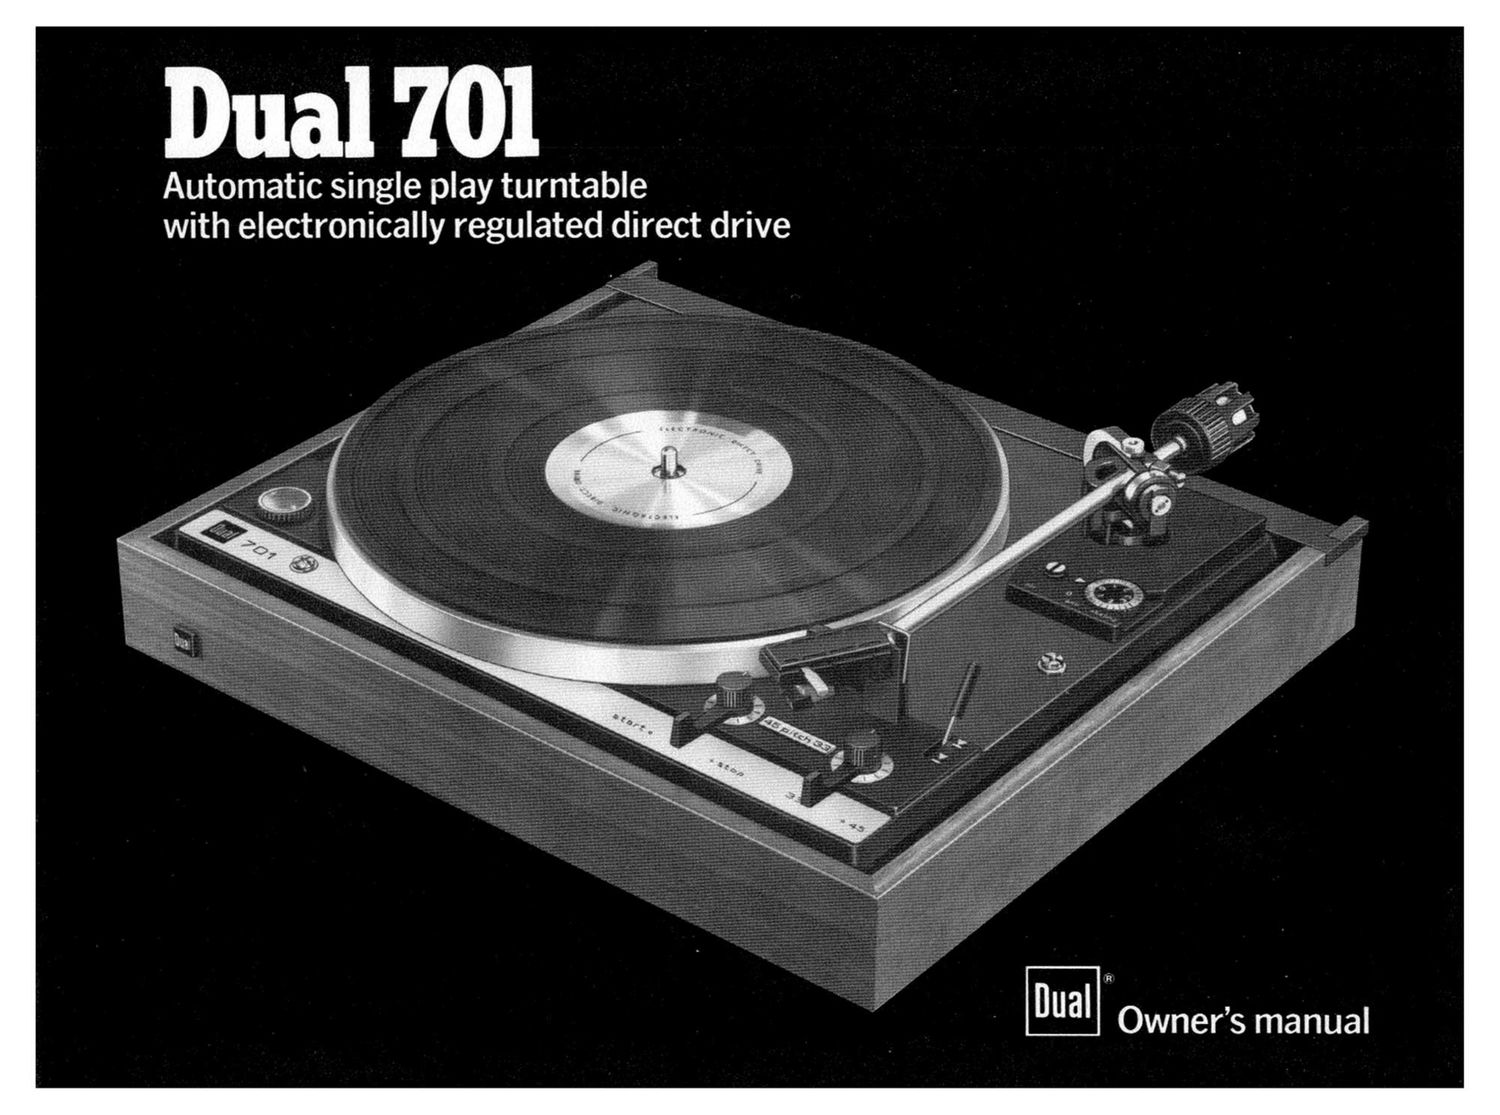 Dual 701 Owners Manual